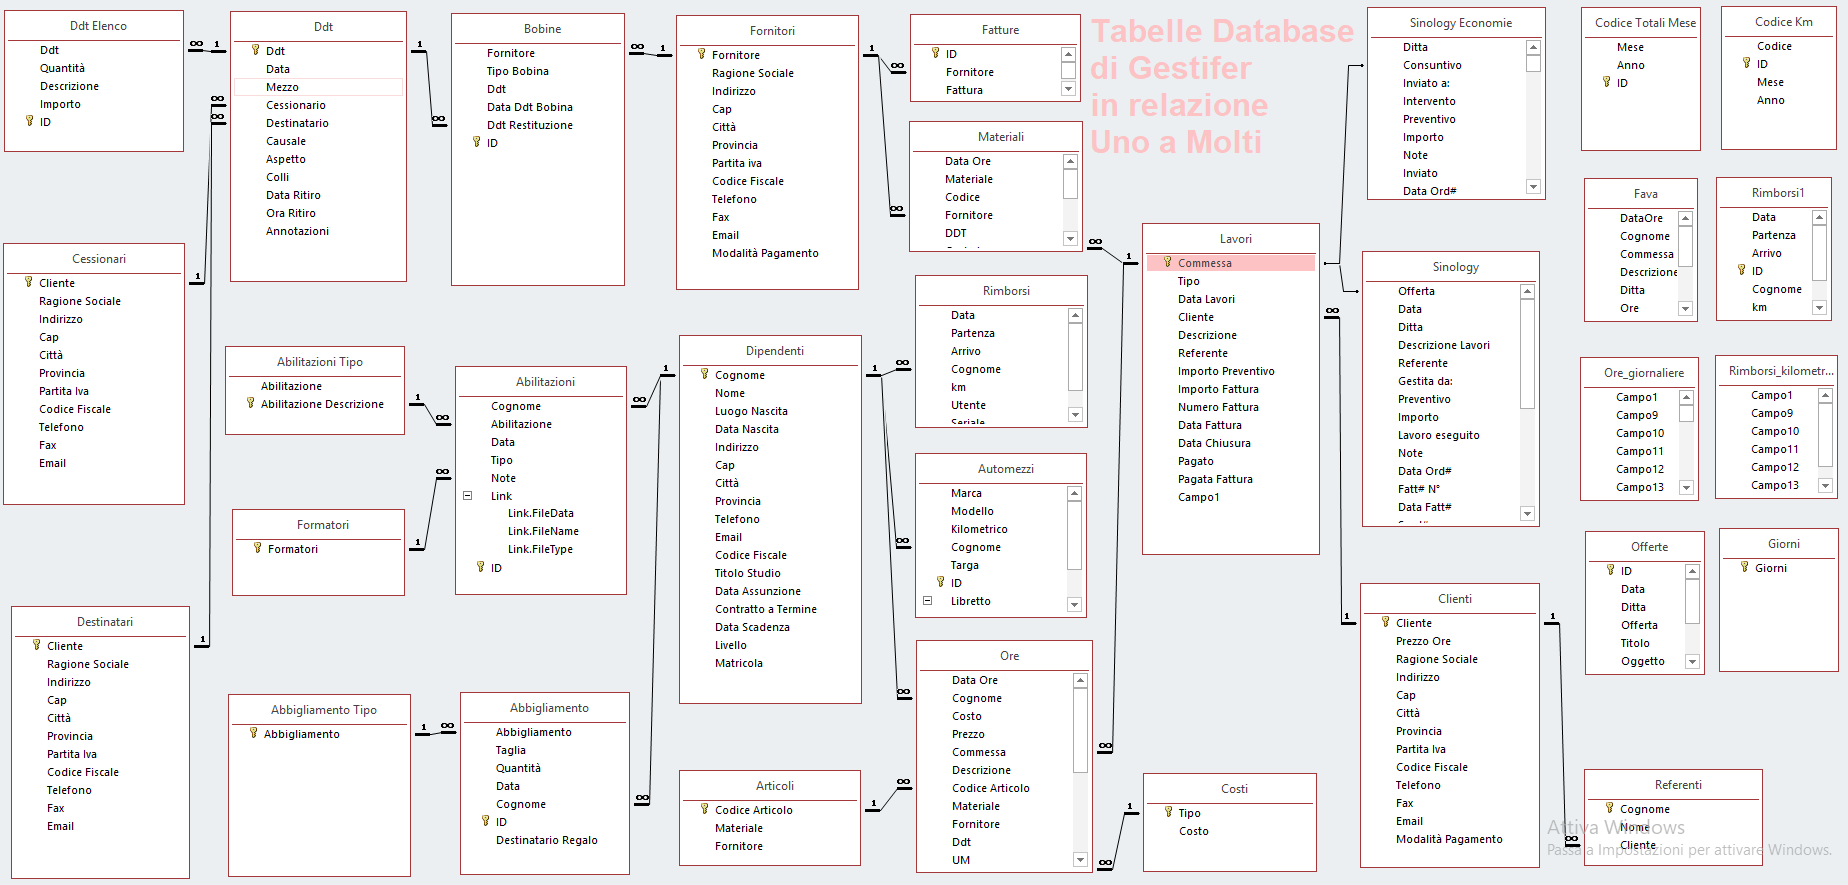 Microsoft Access Database tabelle relazioni 1 a molti